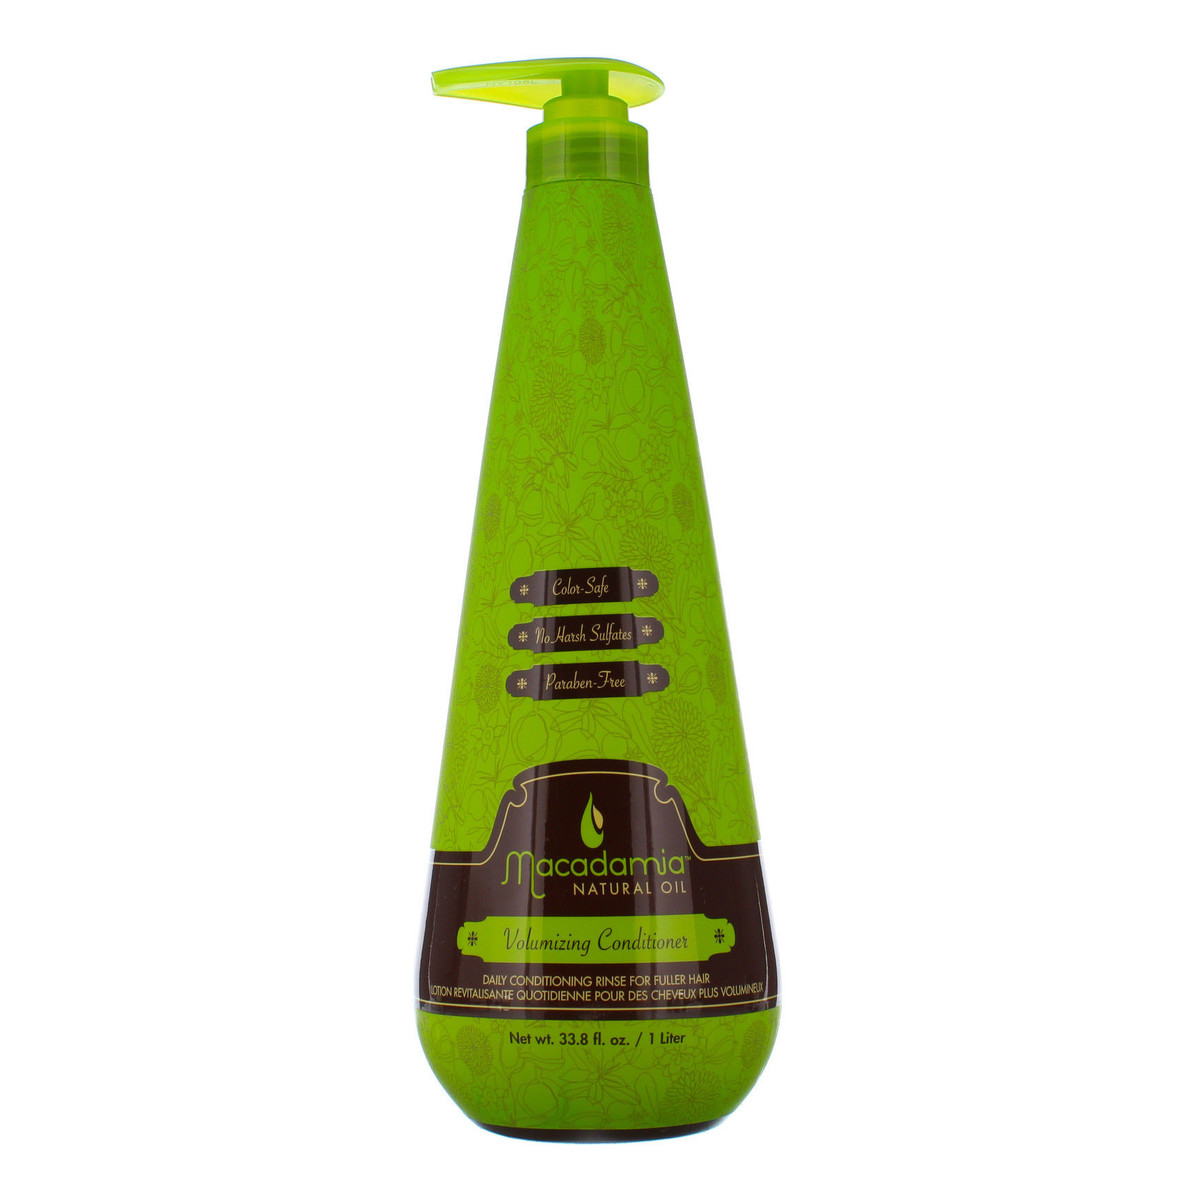 Macadamia Professional Natural Oil odżywka do włosów zwiększająca objętość 1000ml